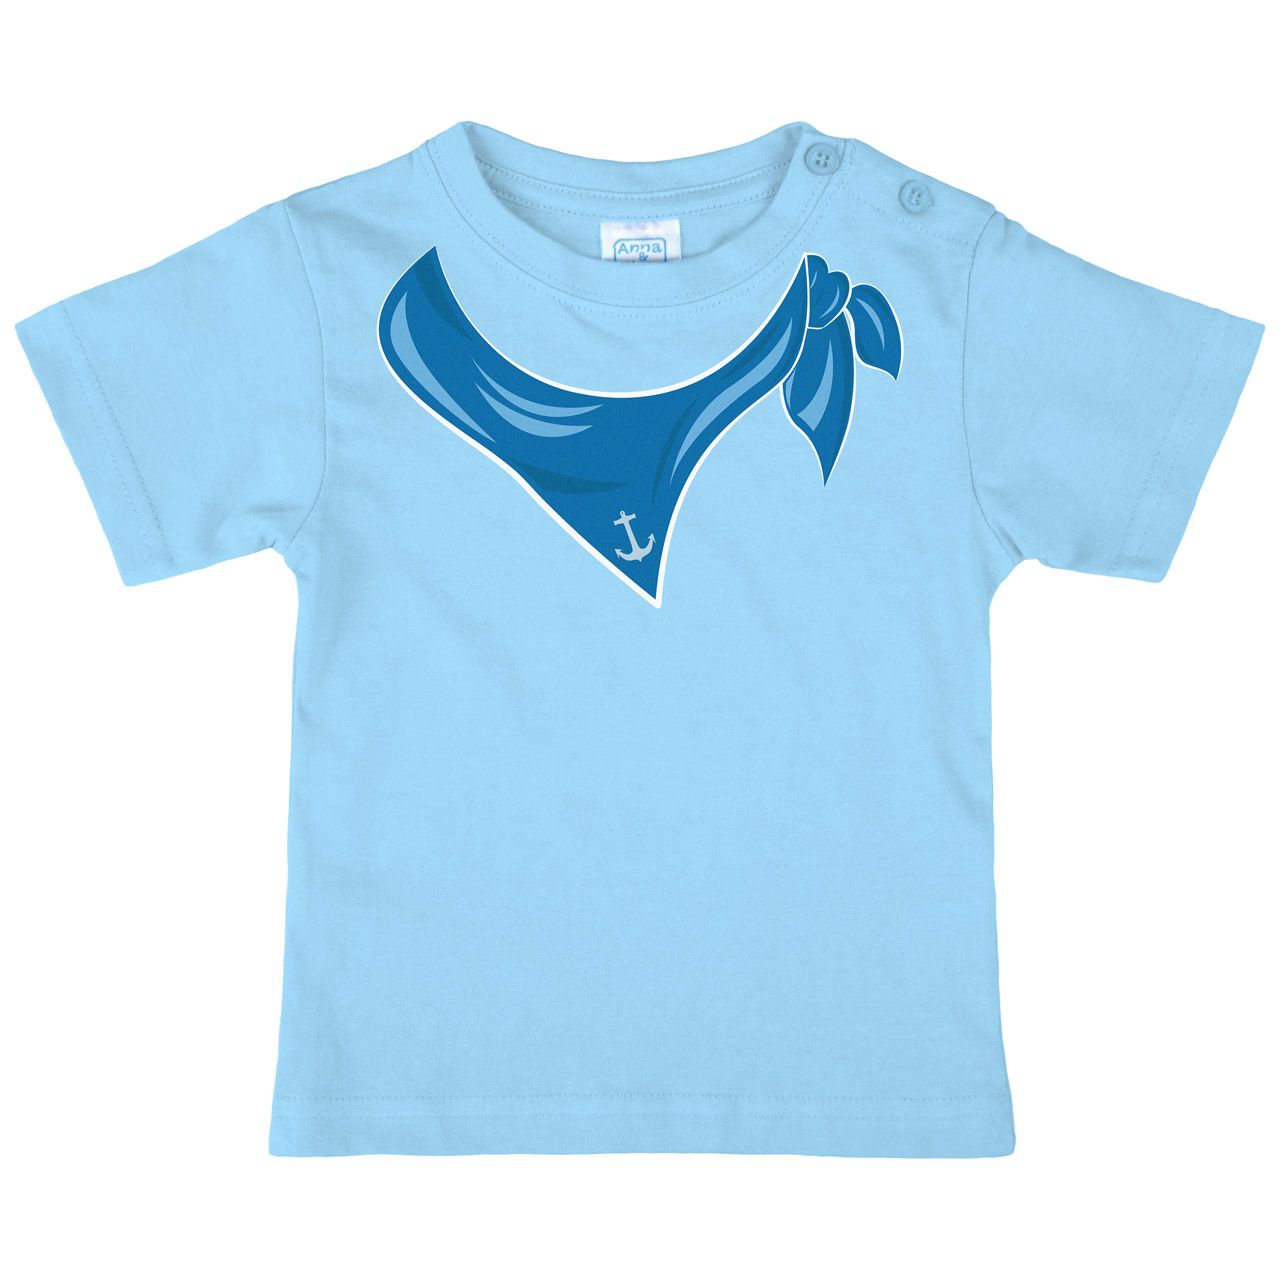 Halstuch Anker Junge Kinder T-Shirt hellblau 68 / 74